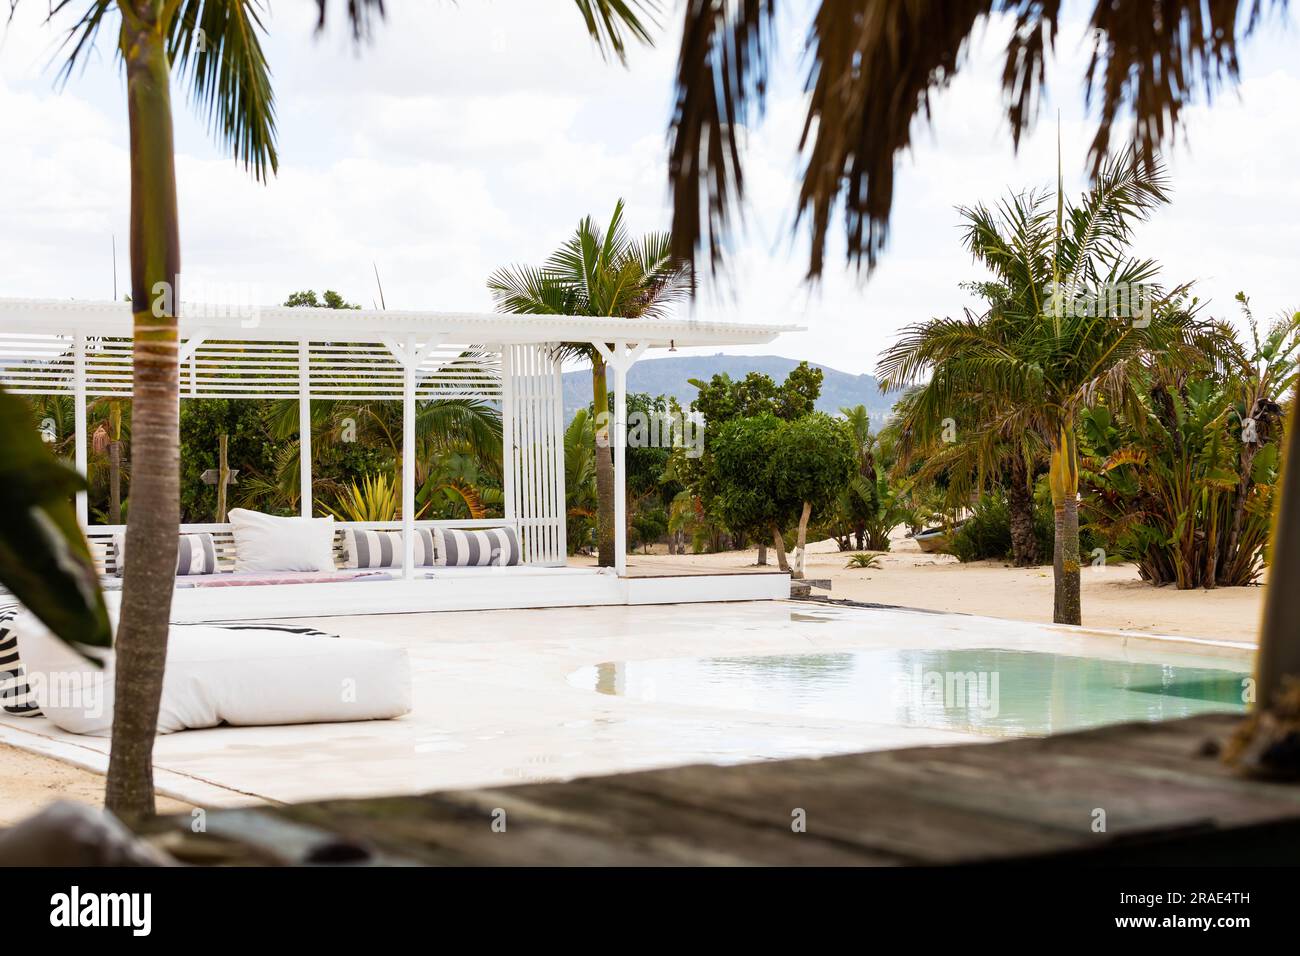 Piscina e terrazza con mobili all'aperto e palme presso il resort tropicale sulla spiaggia, spazio fotocopie Foto Stock